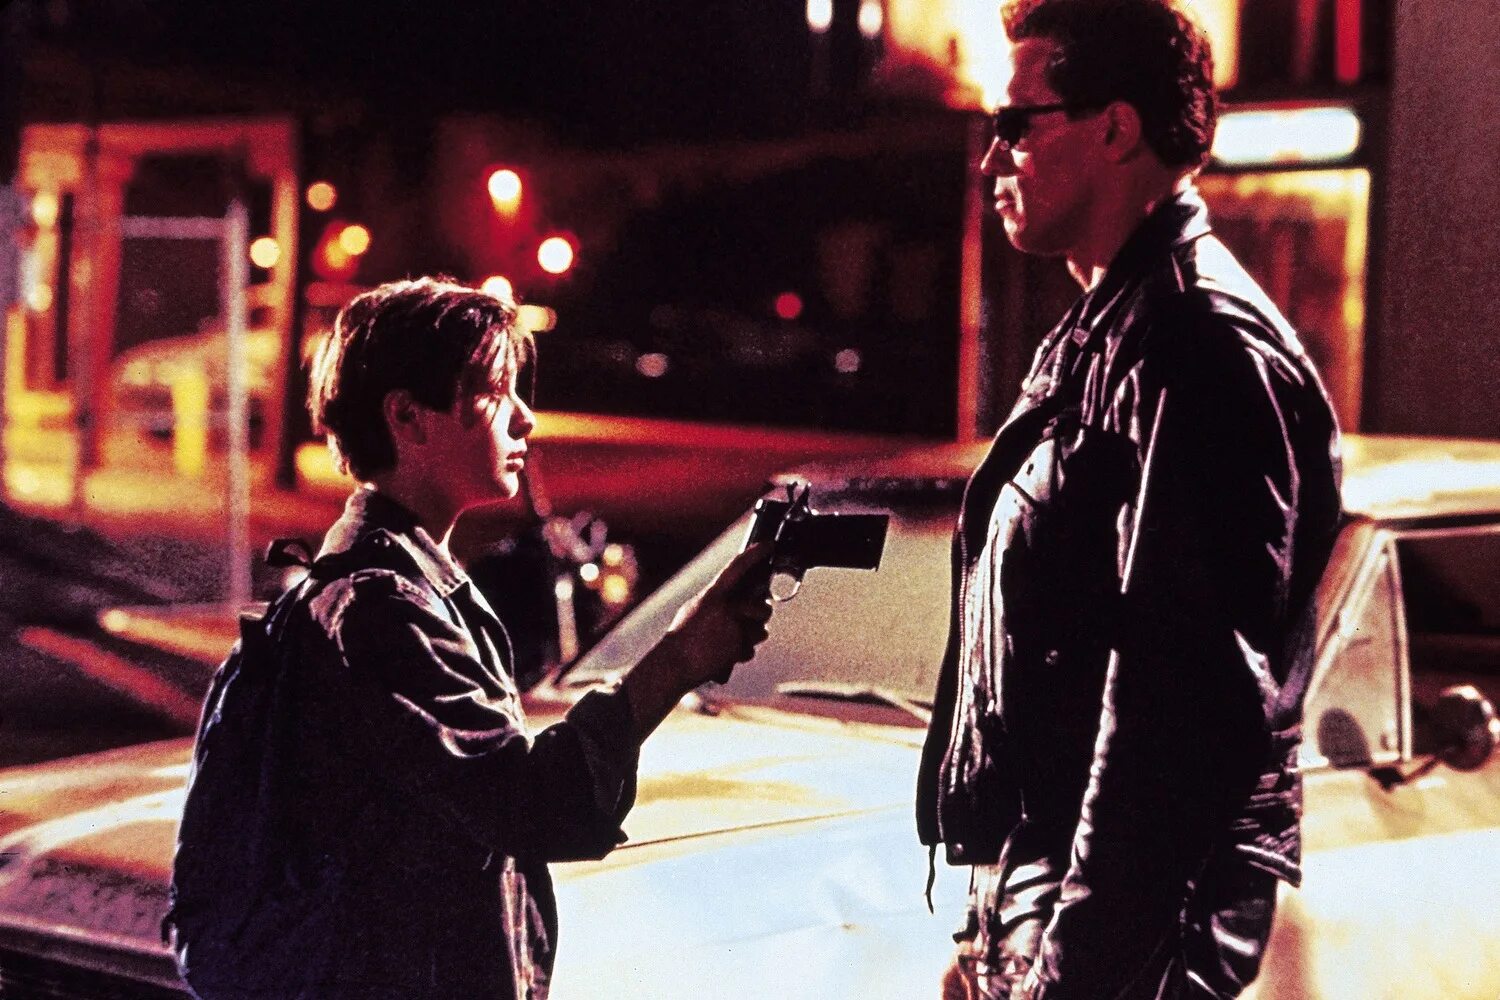 Terminator 1991.